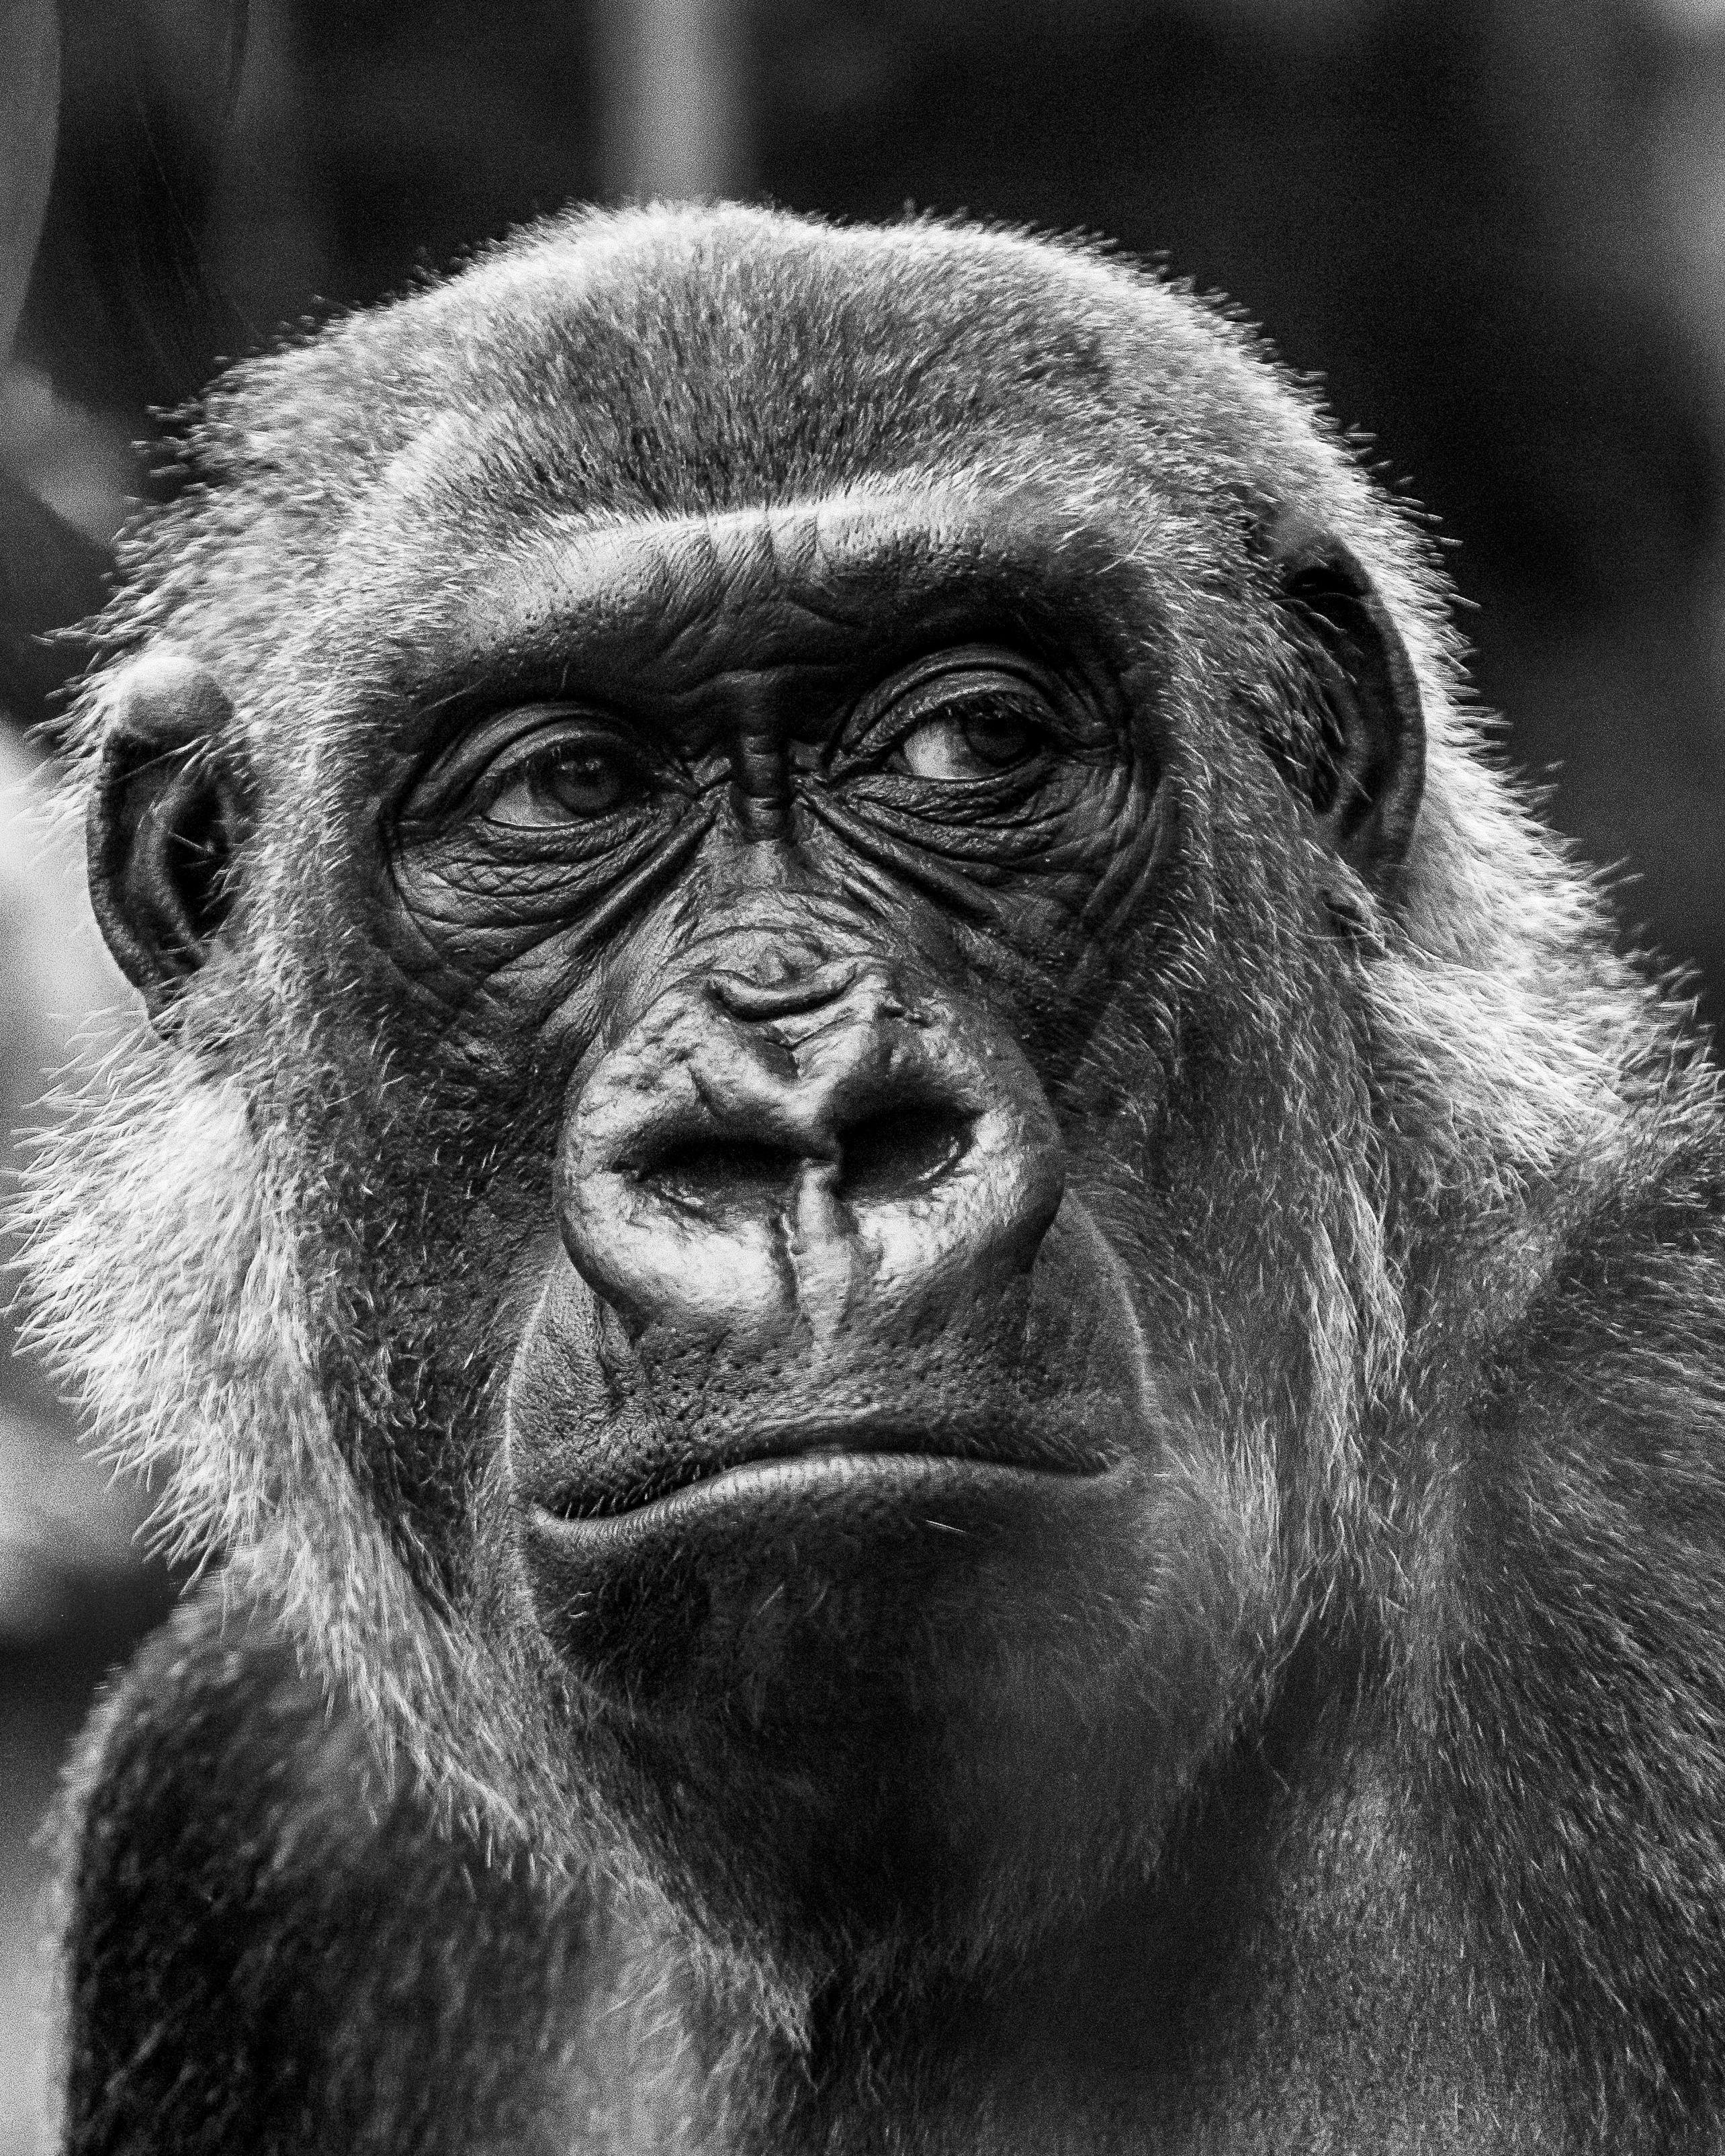 Nếu bạn là một người yêu khỉ đột, những hình ảnh này chắc chắn sẽ khiến bạn vui mừng. Những khỉ đáng yêu này vô cùng thông minh, tinh nghịch và thú vị. Chúng thật sự là một điểm nhấn để bạn có được những phút giây giải trí tuyệt vời. Hãy xem những bức ảnh và khám phá thế giới động vật!